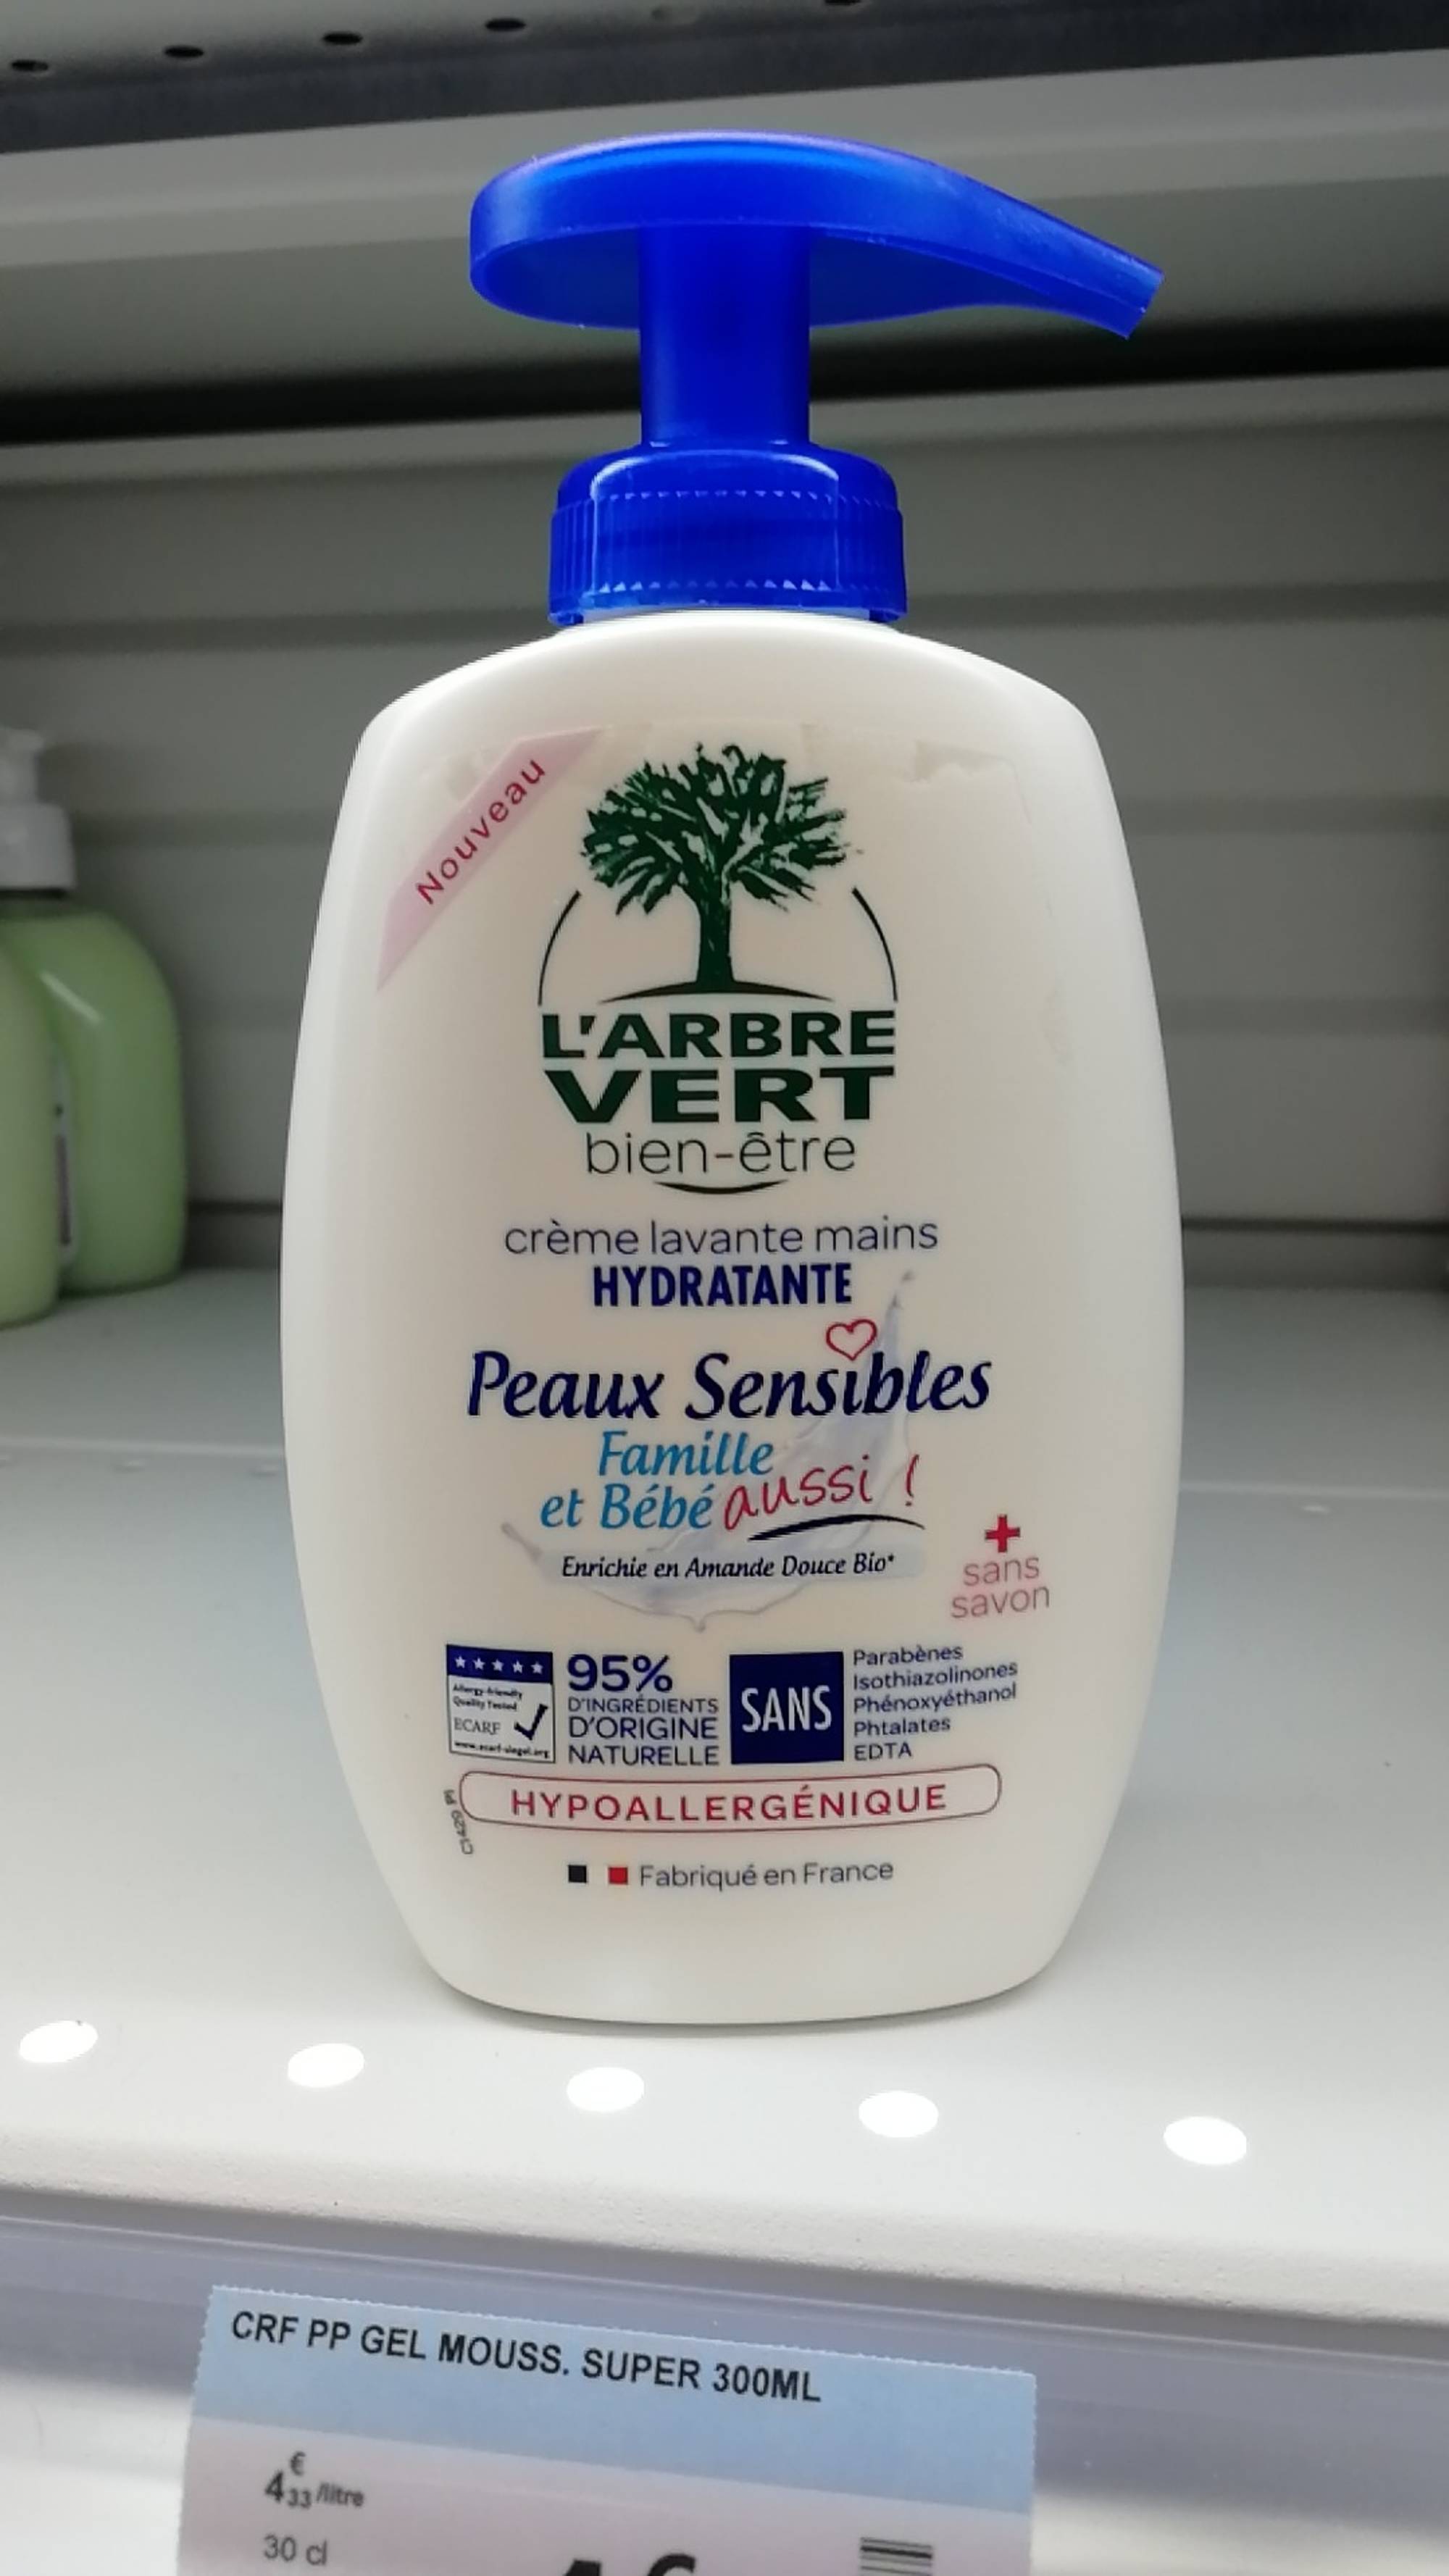 L'ARBRE VERT - Lessive liquide - Au savon végétal - 33 lavages